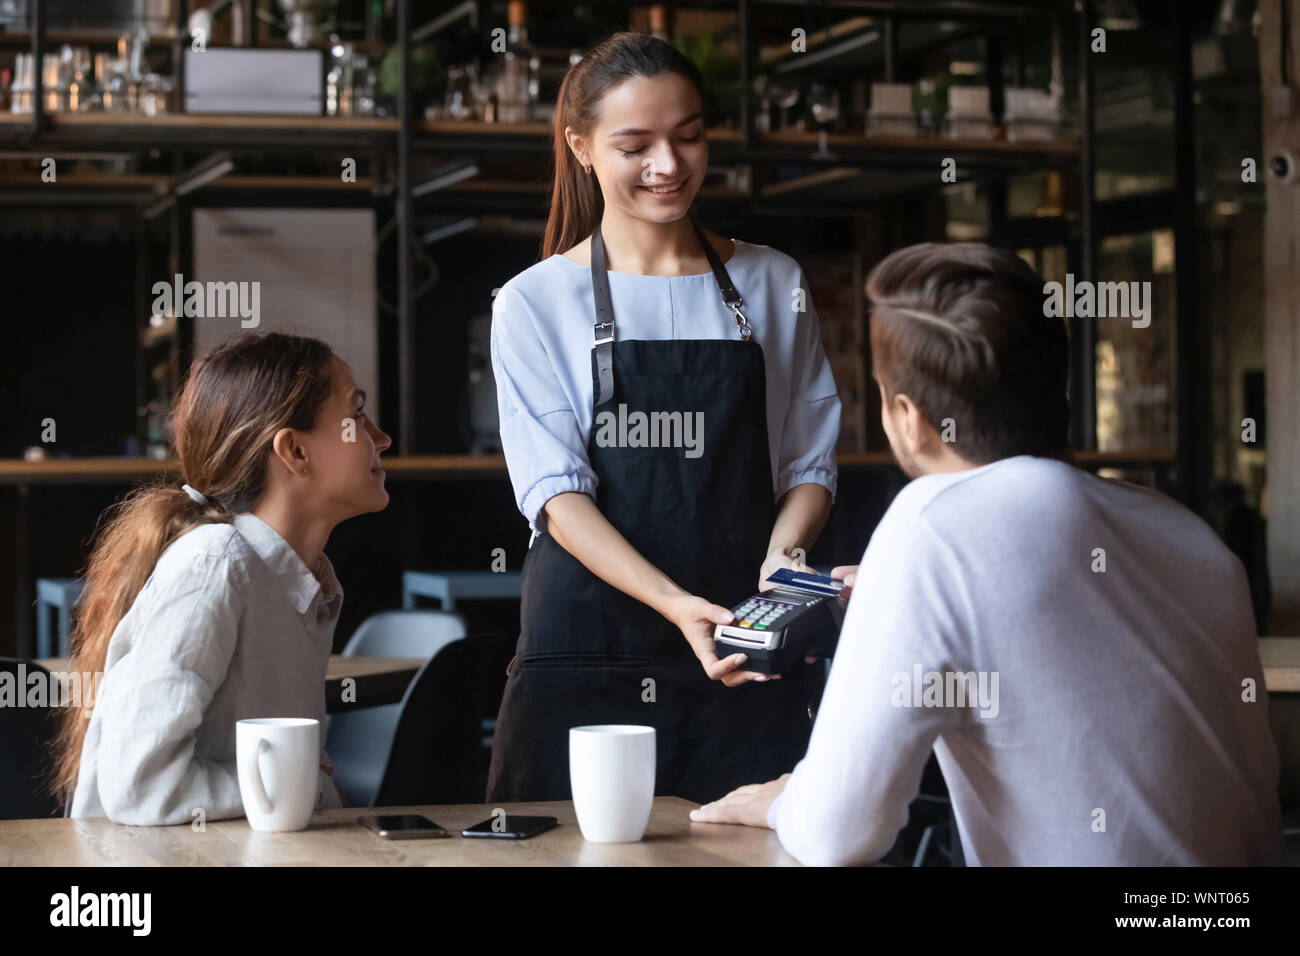 Le client paie par carte de crédit sans contact, attrayant waitress holding reader Banque D'Images